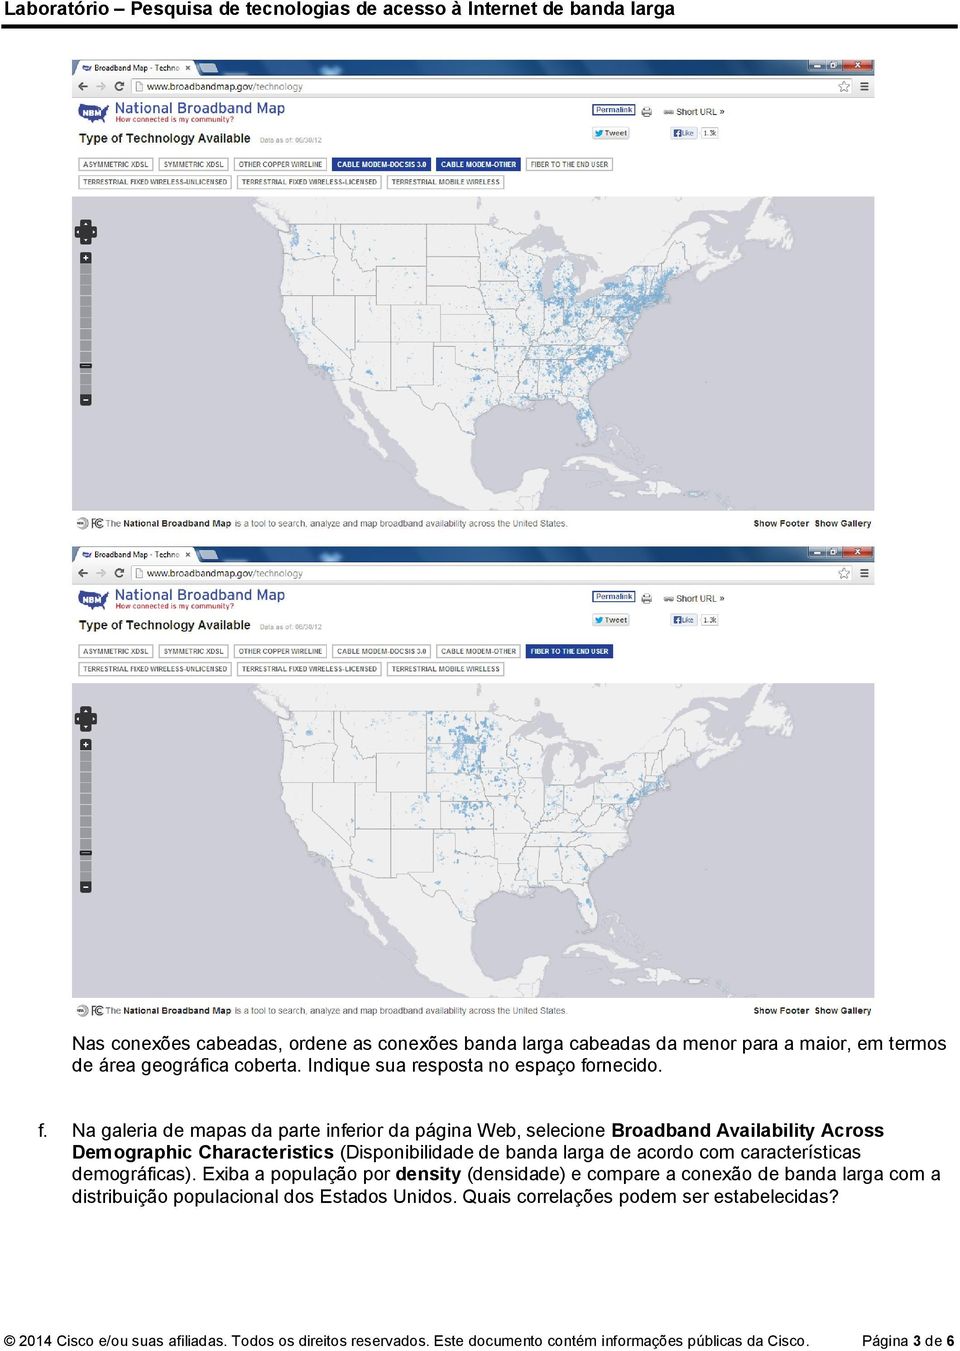 com características demográficas). Exiba a população por density (densidade) e compare a conexão de banda larga com a distribuição populacional dos Estados Unidos.